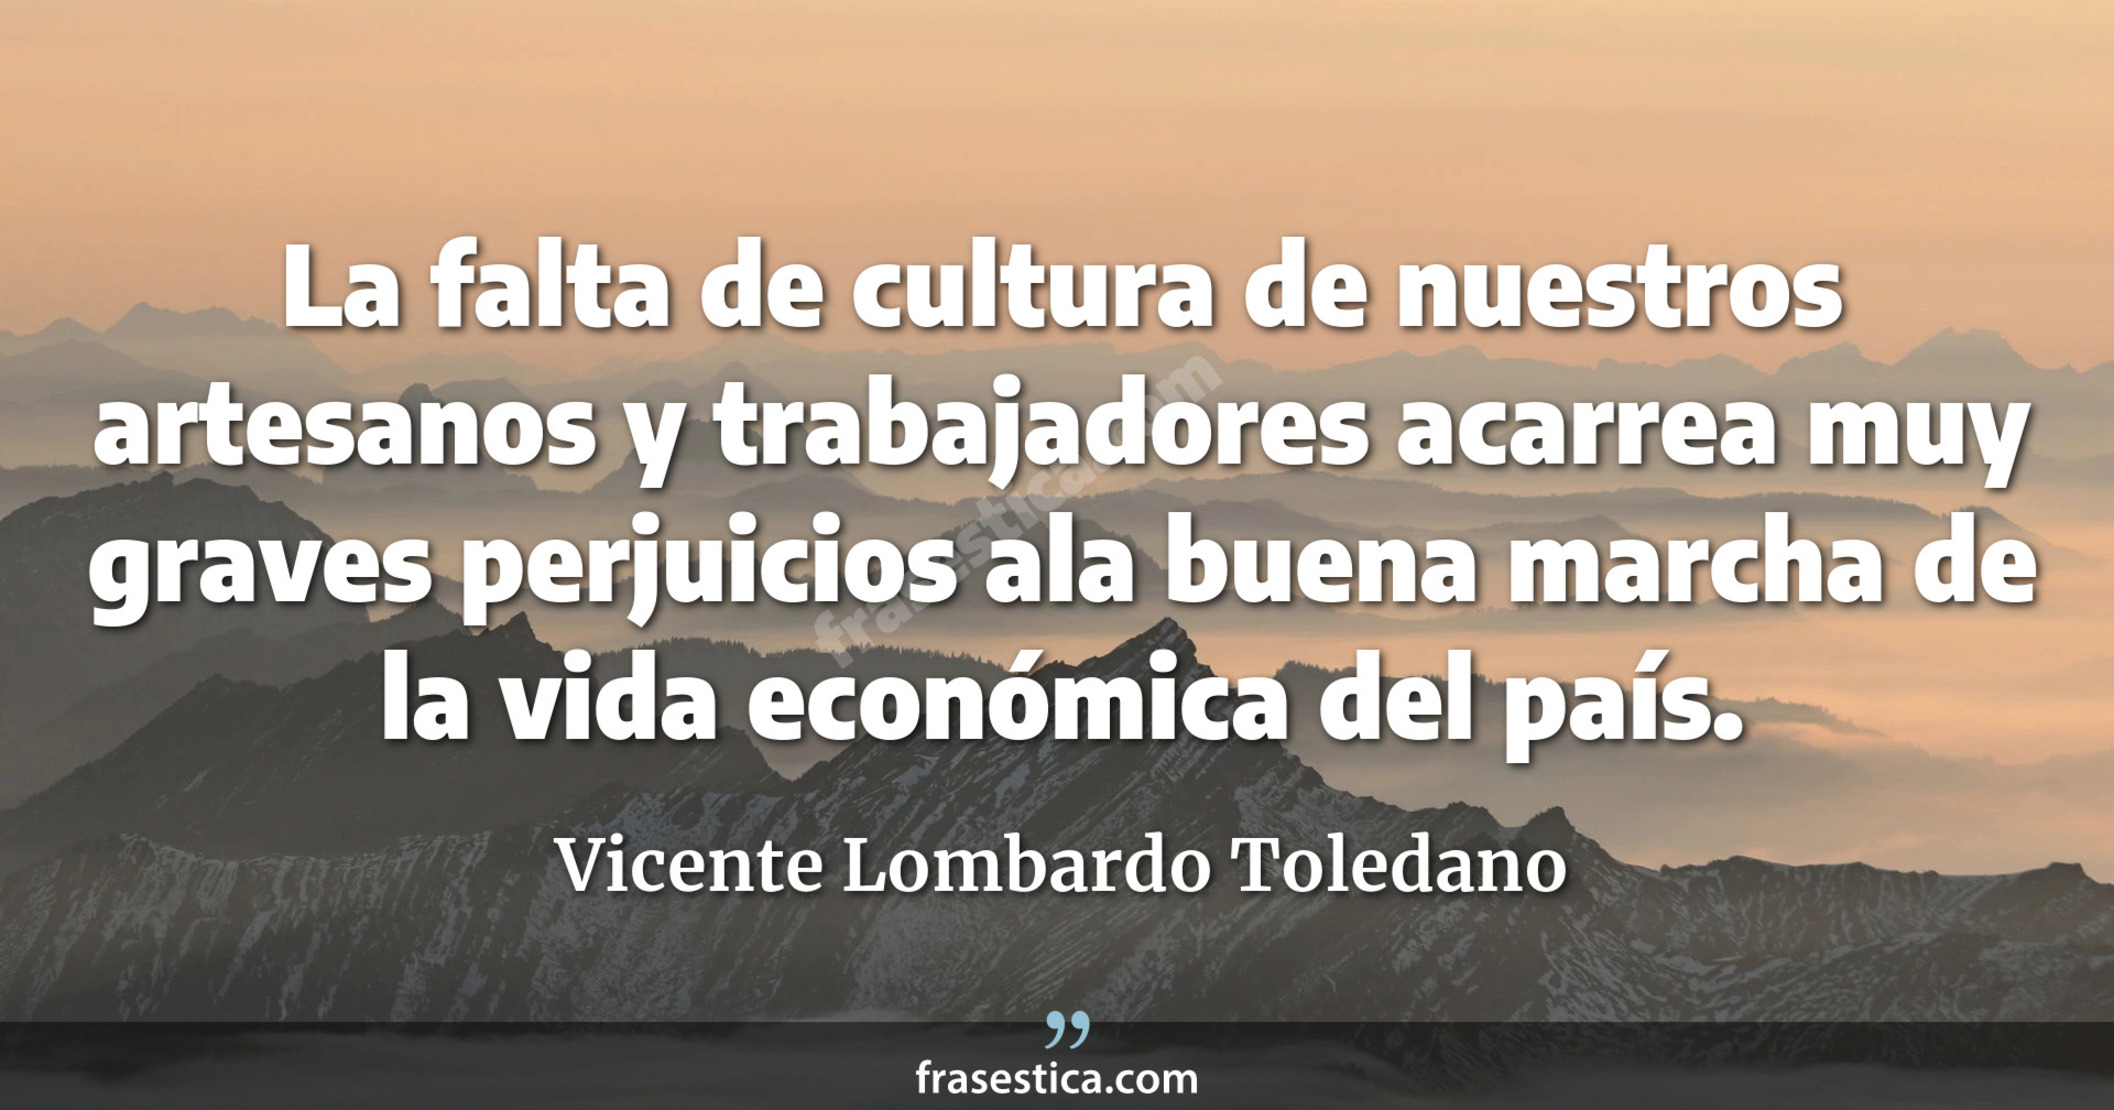 La falta de cultura de nuestros artesanos y trabajadores acarrea muy graves perjuicios ala buena marcha de la vida económica del país. - Vicente Lombardo Toledano